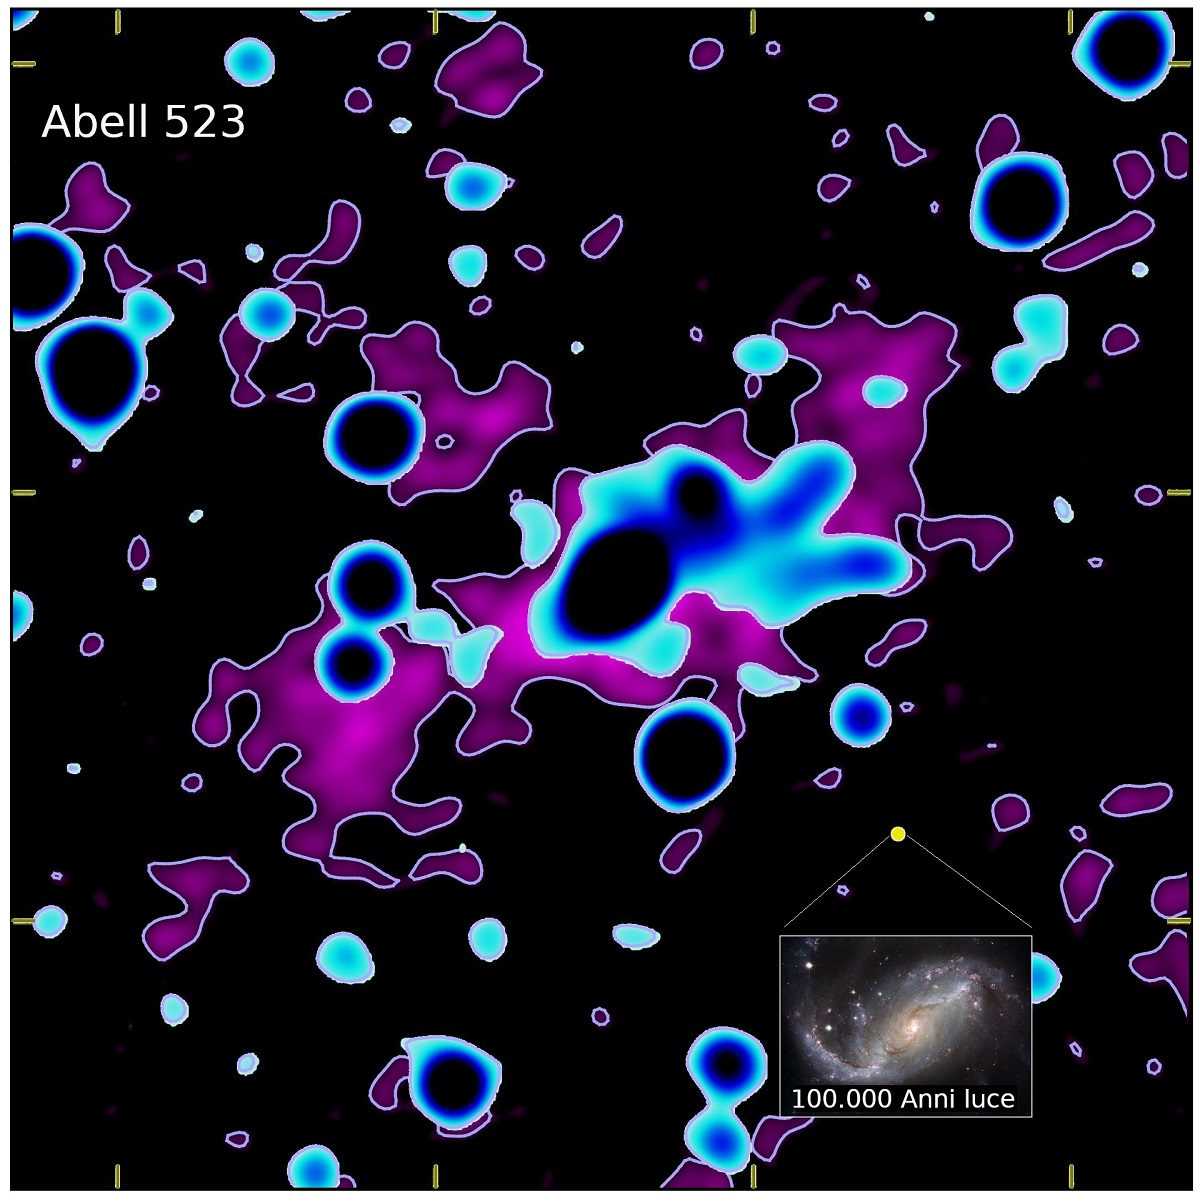 emissione polarizzata nell'ammasso di galassie Abell 523